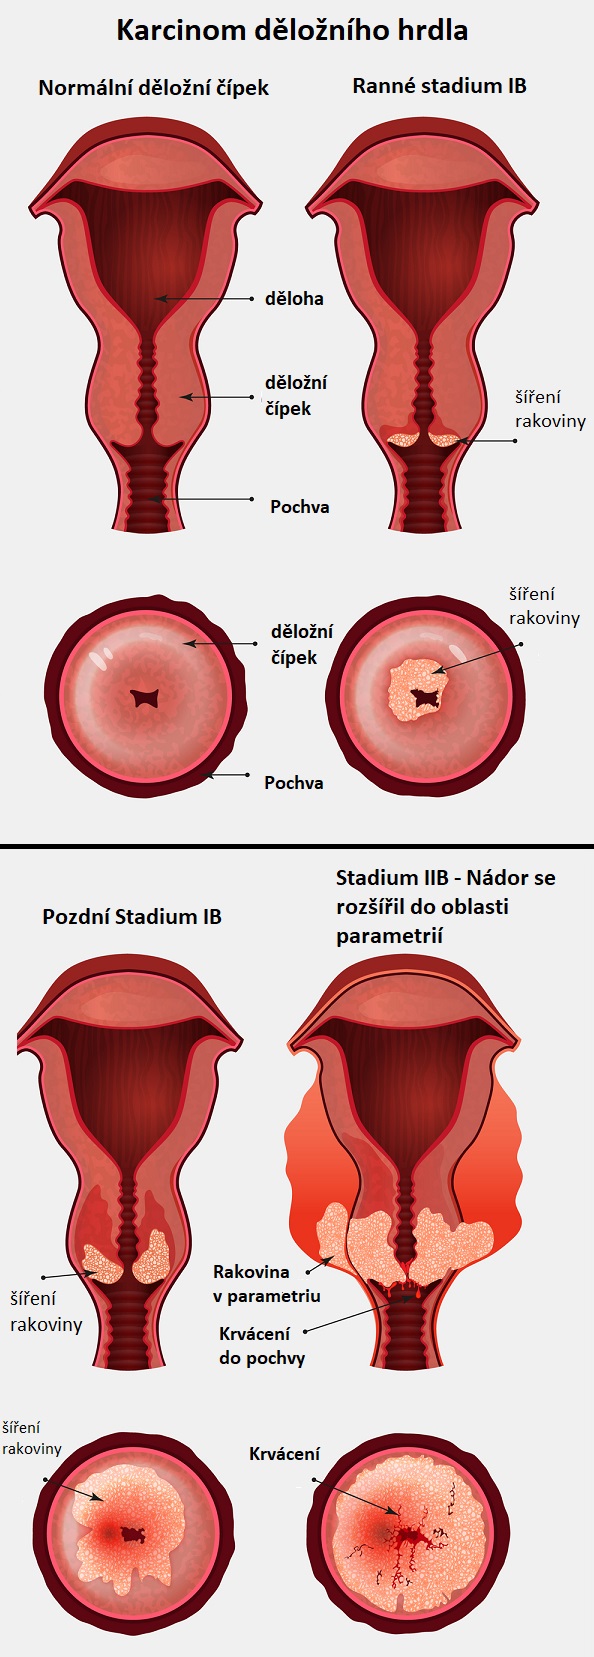 Rakovina děložního čípku - ilustrace